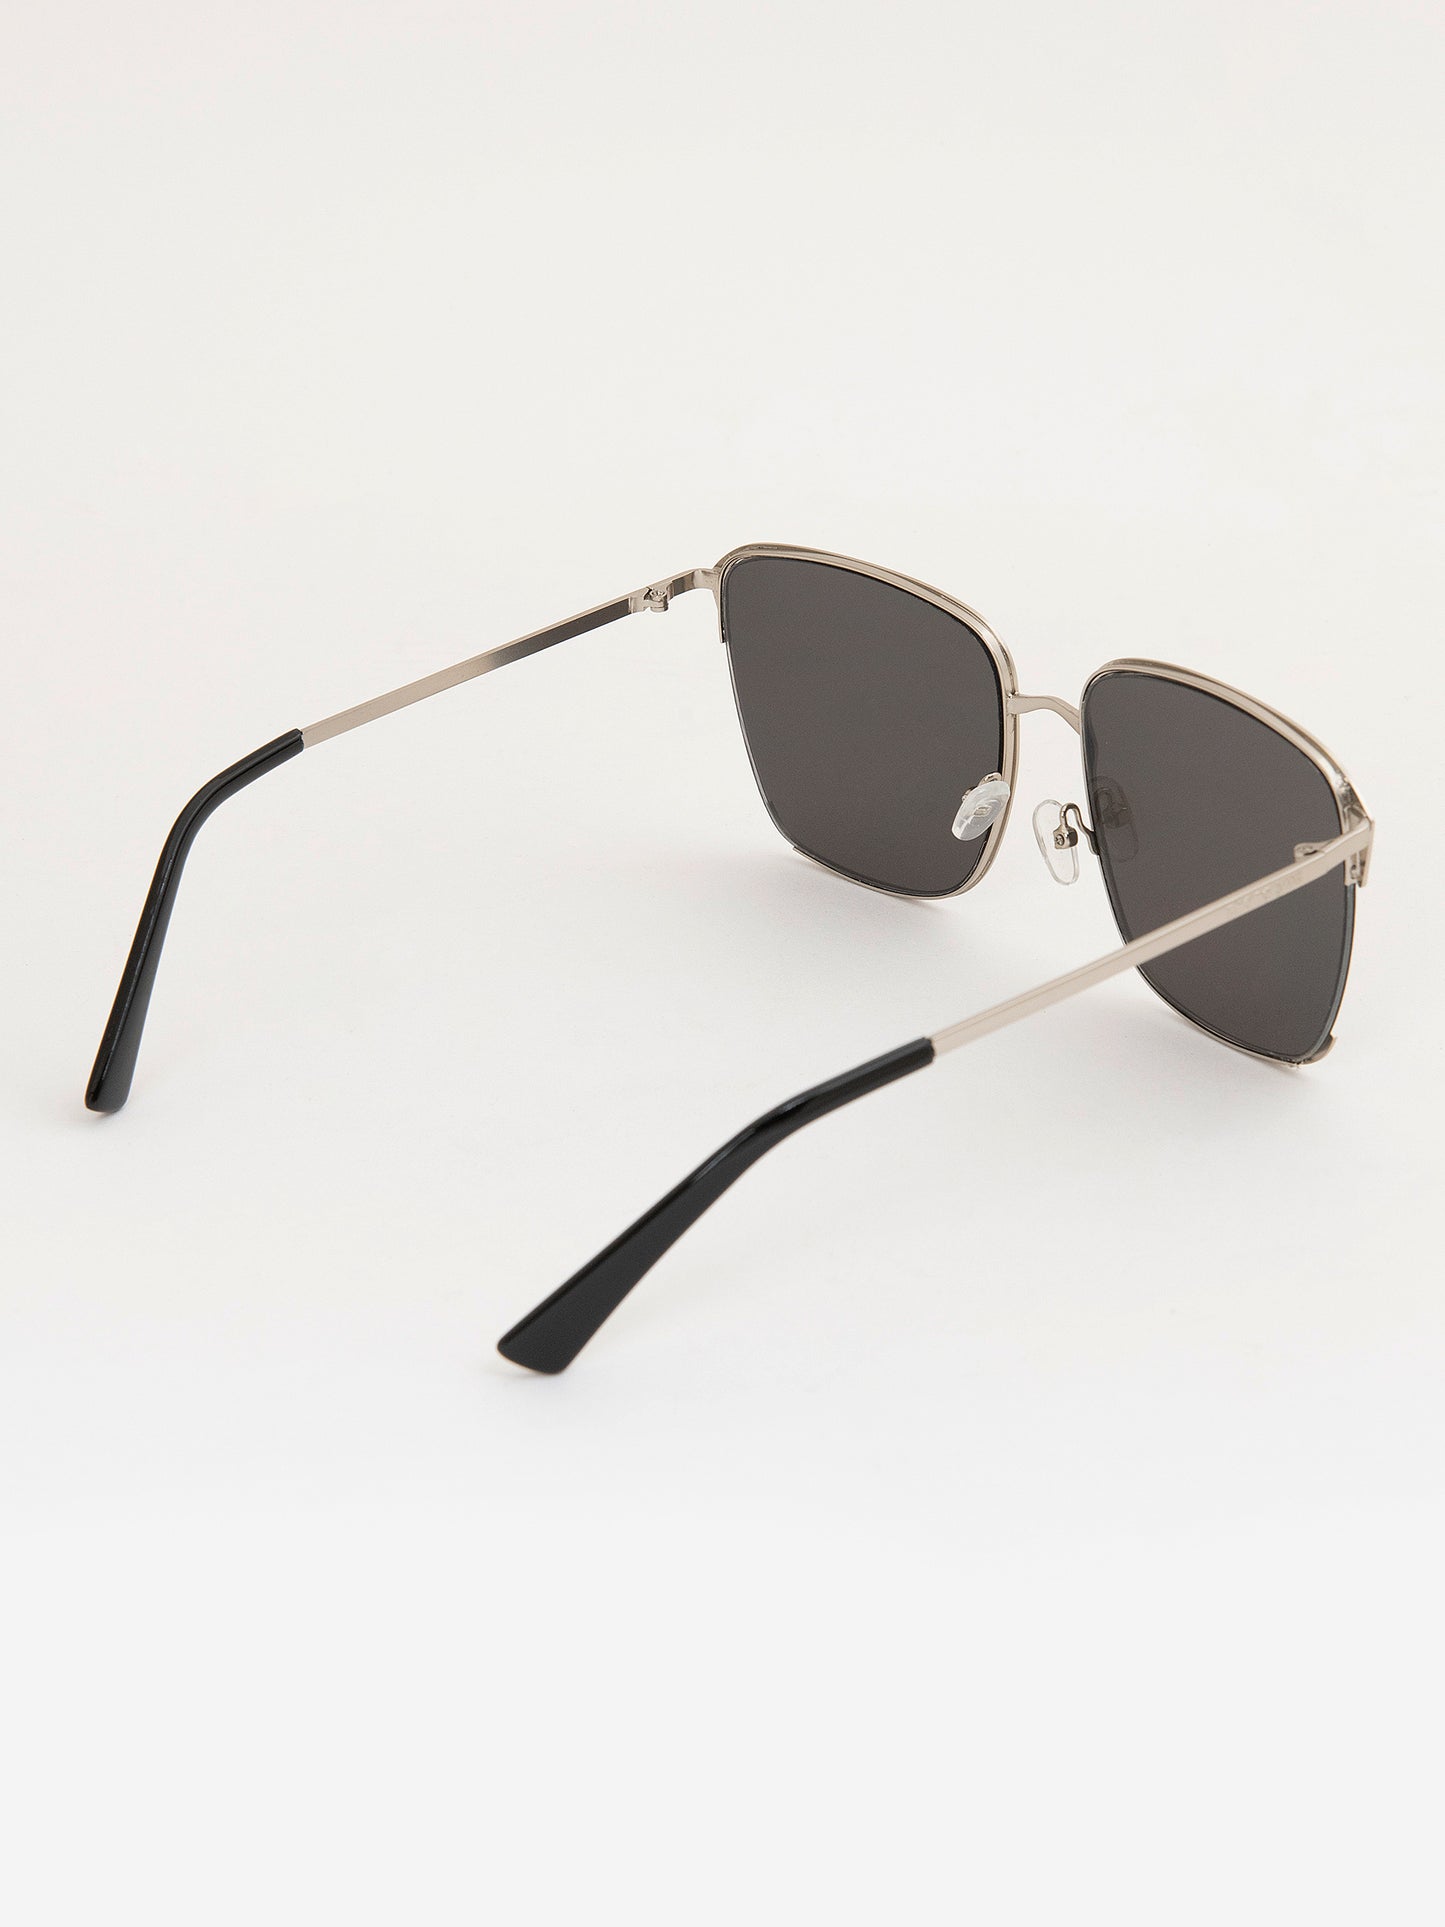 Retro Squared Sunglasses